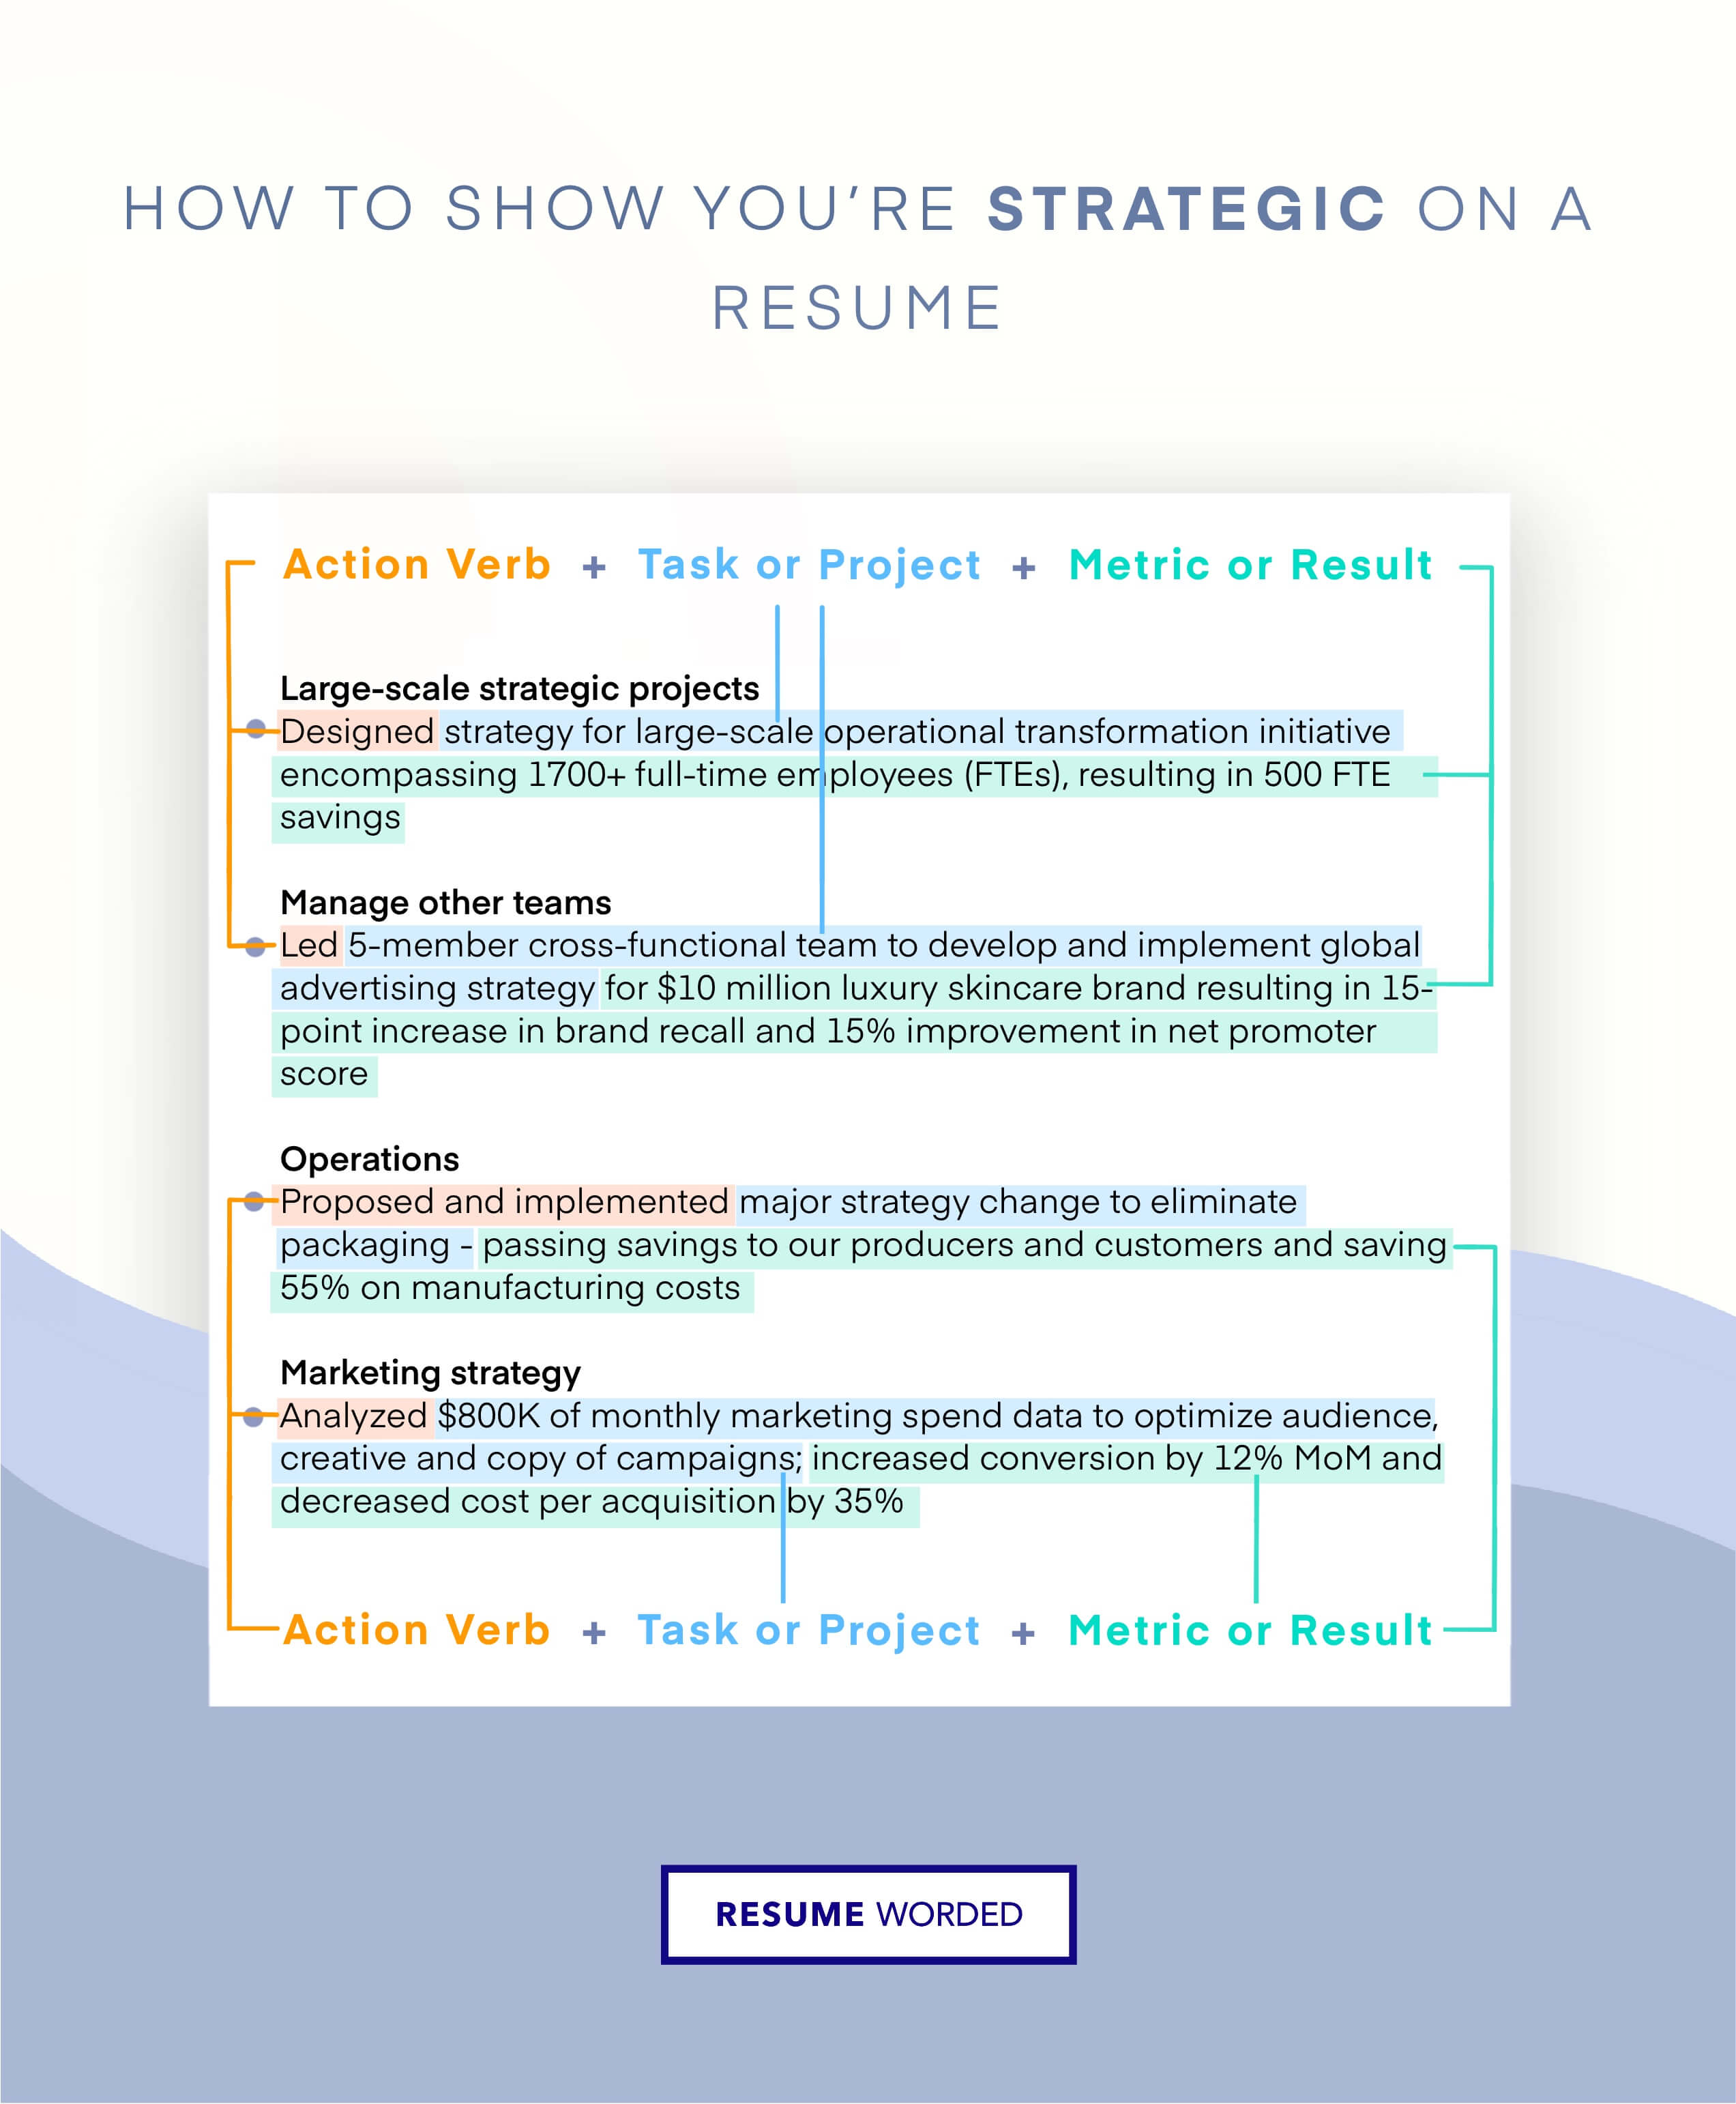 Showcase your strategic thinking - Email Marketing Manager CV